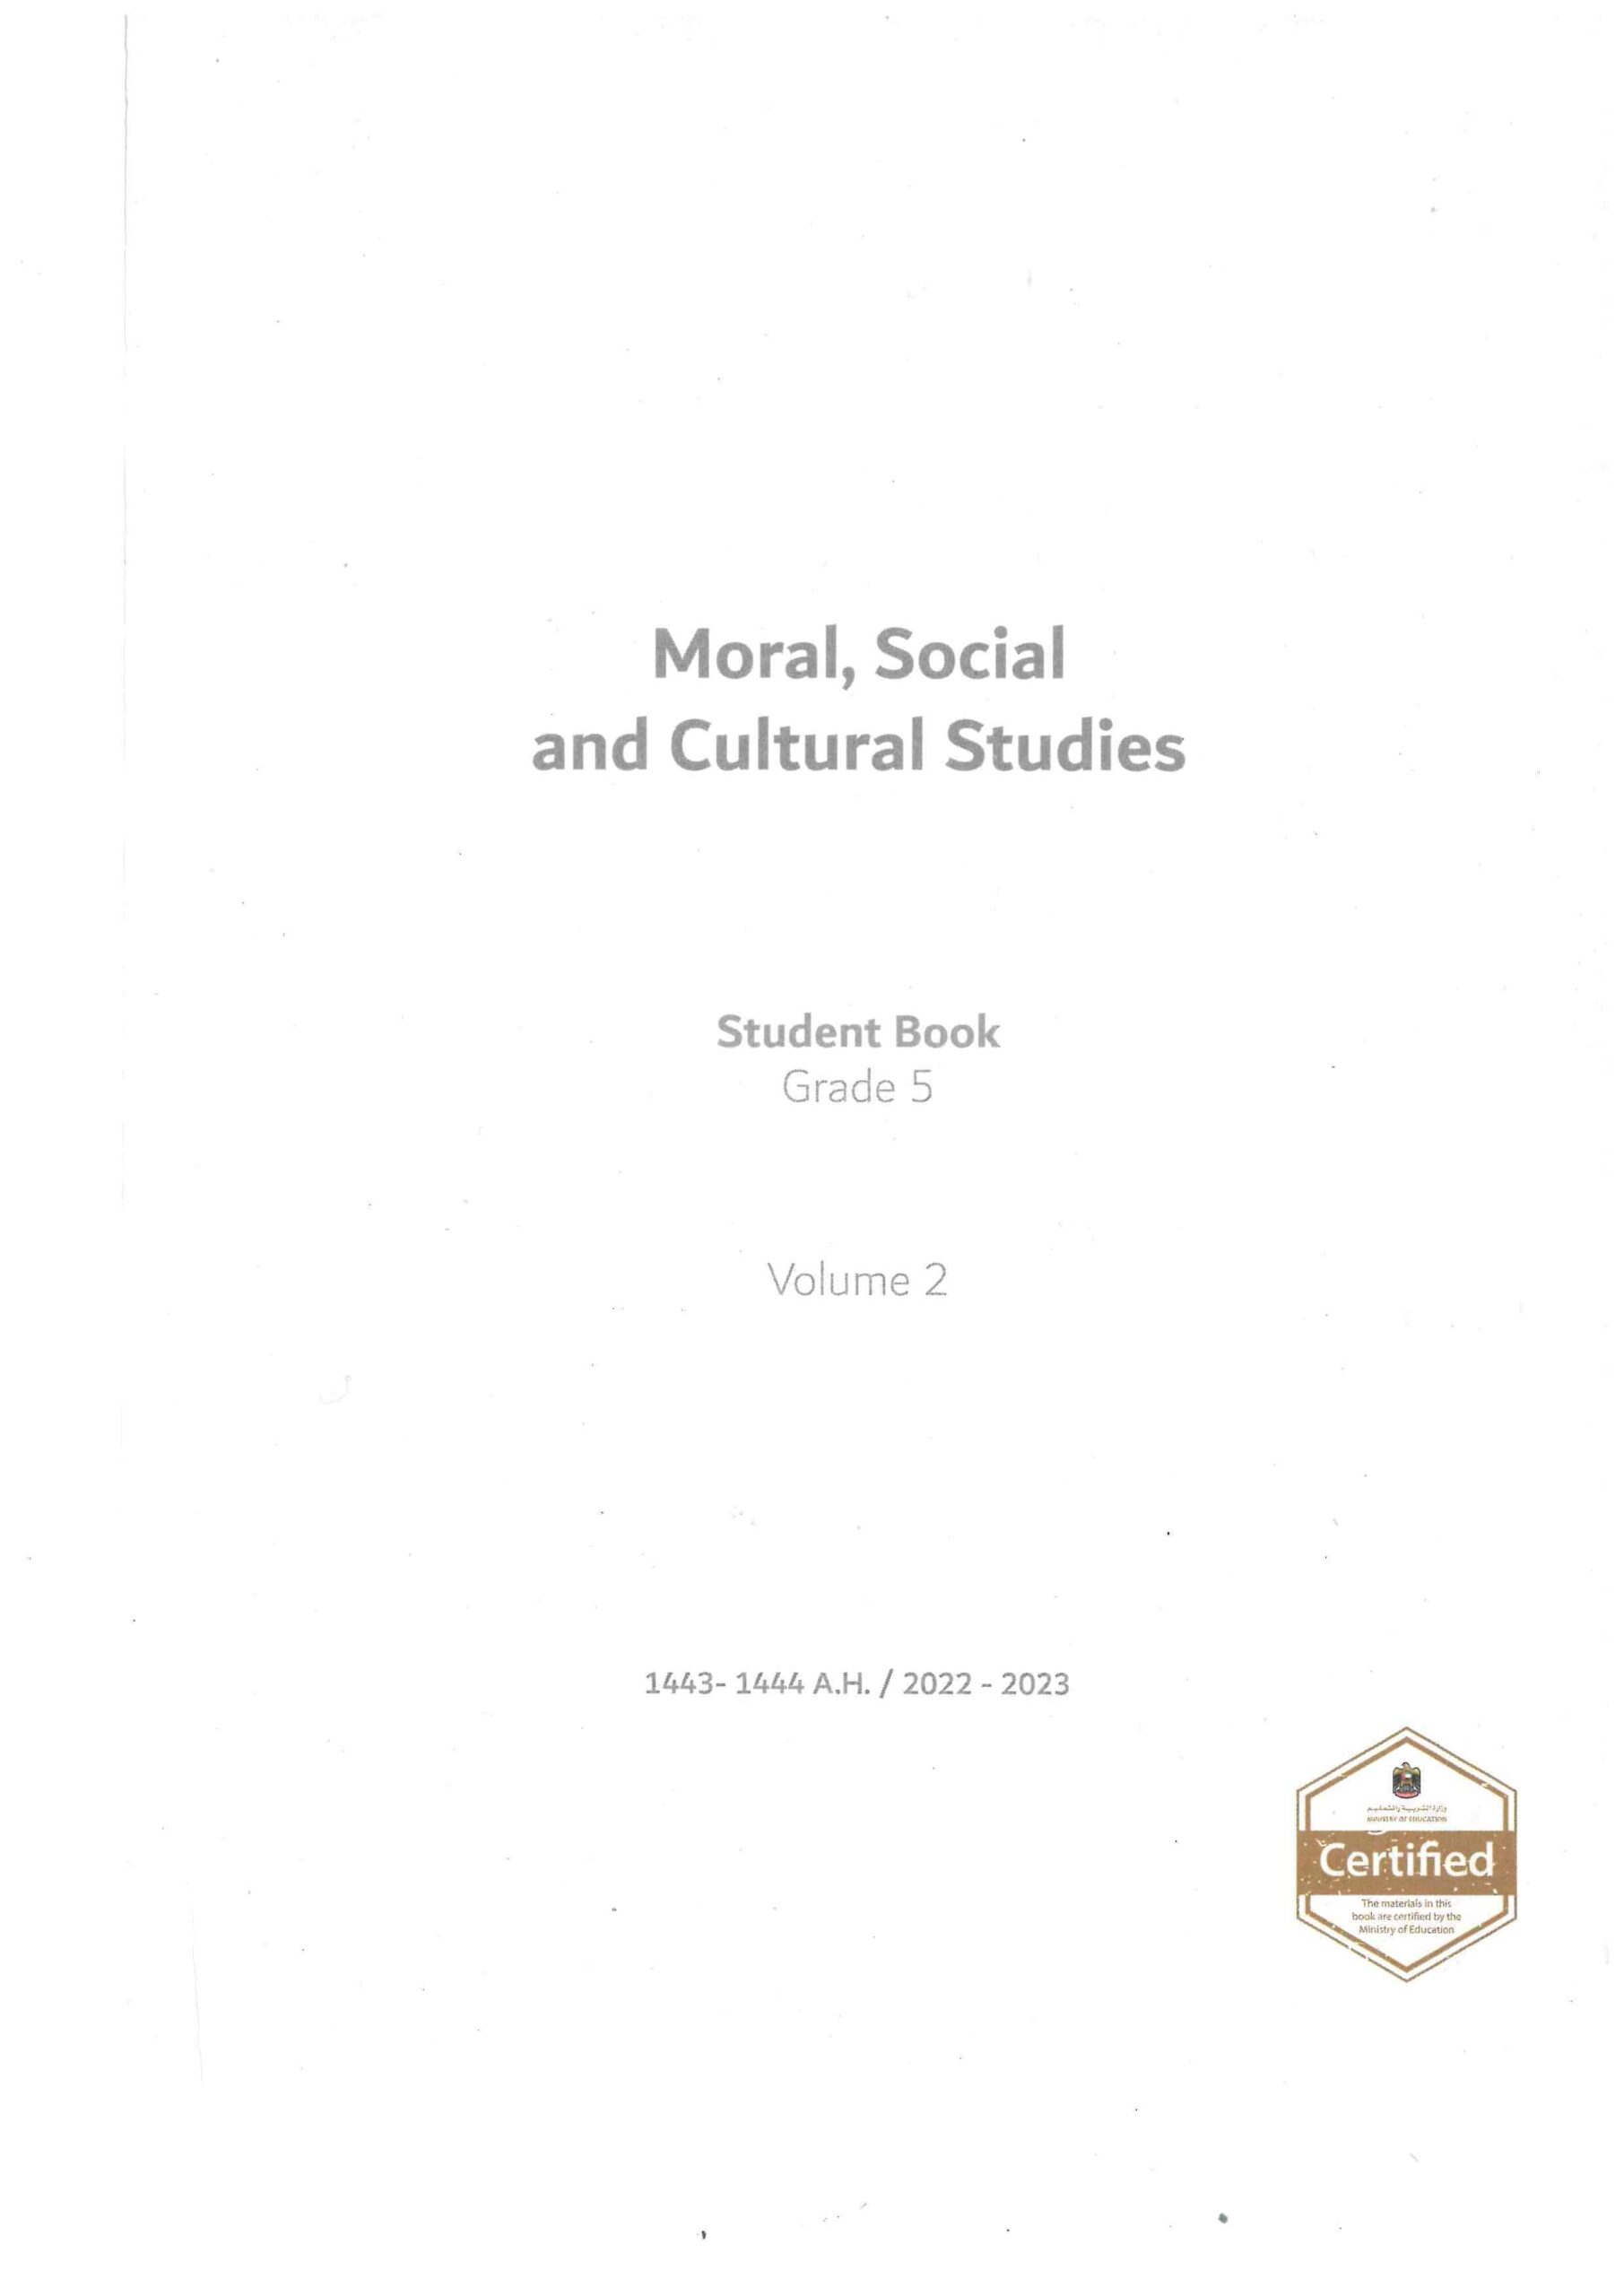 كتاب الطالب لغير الناطقين بها Moral Social & Cultural Studies الصف الخامس الفصل الدراسي الثاني 2022-2023